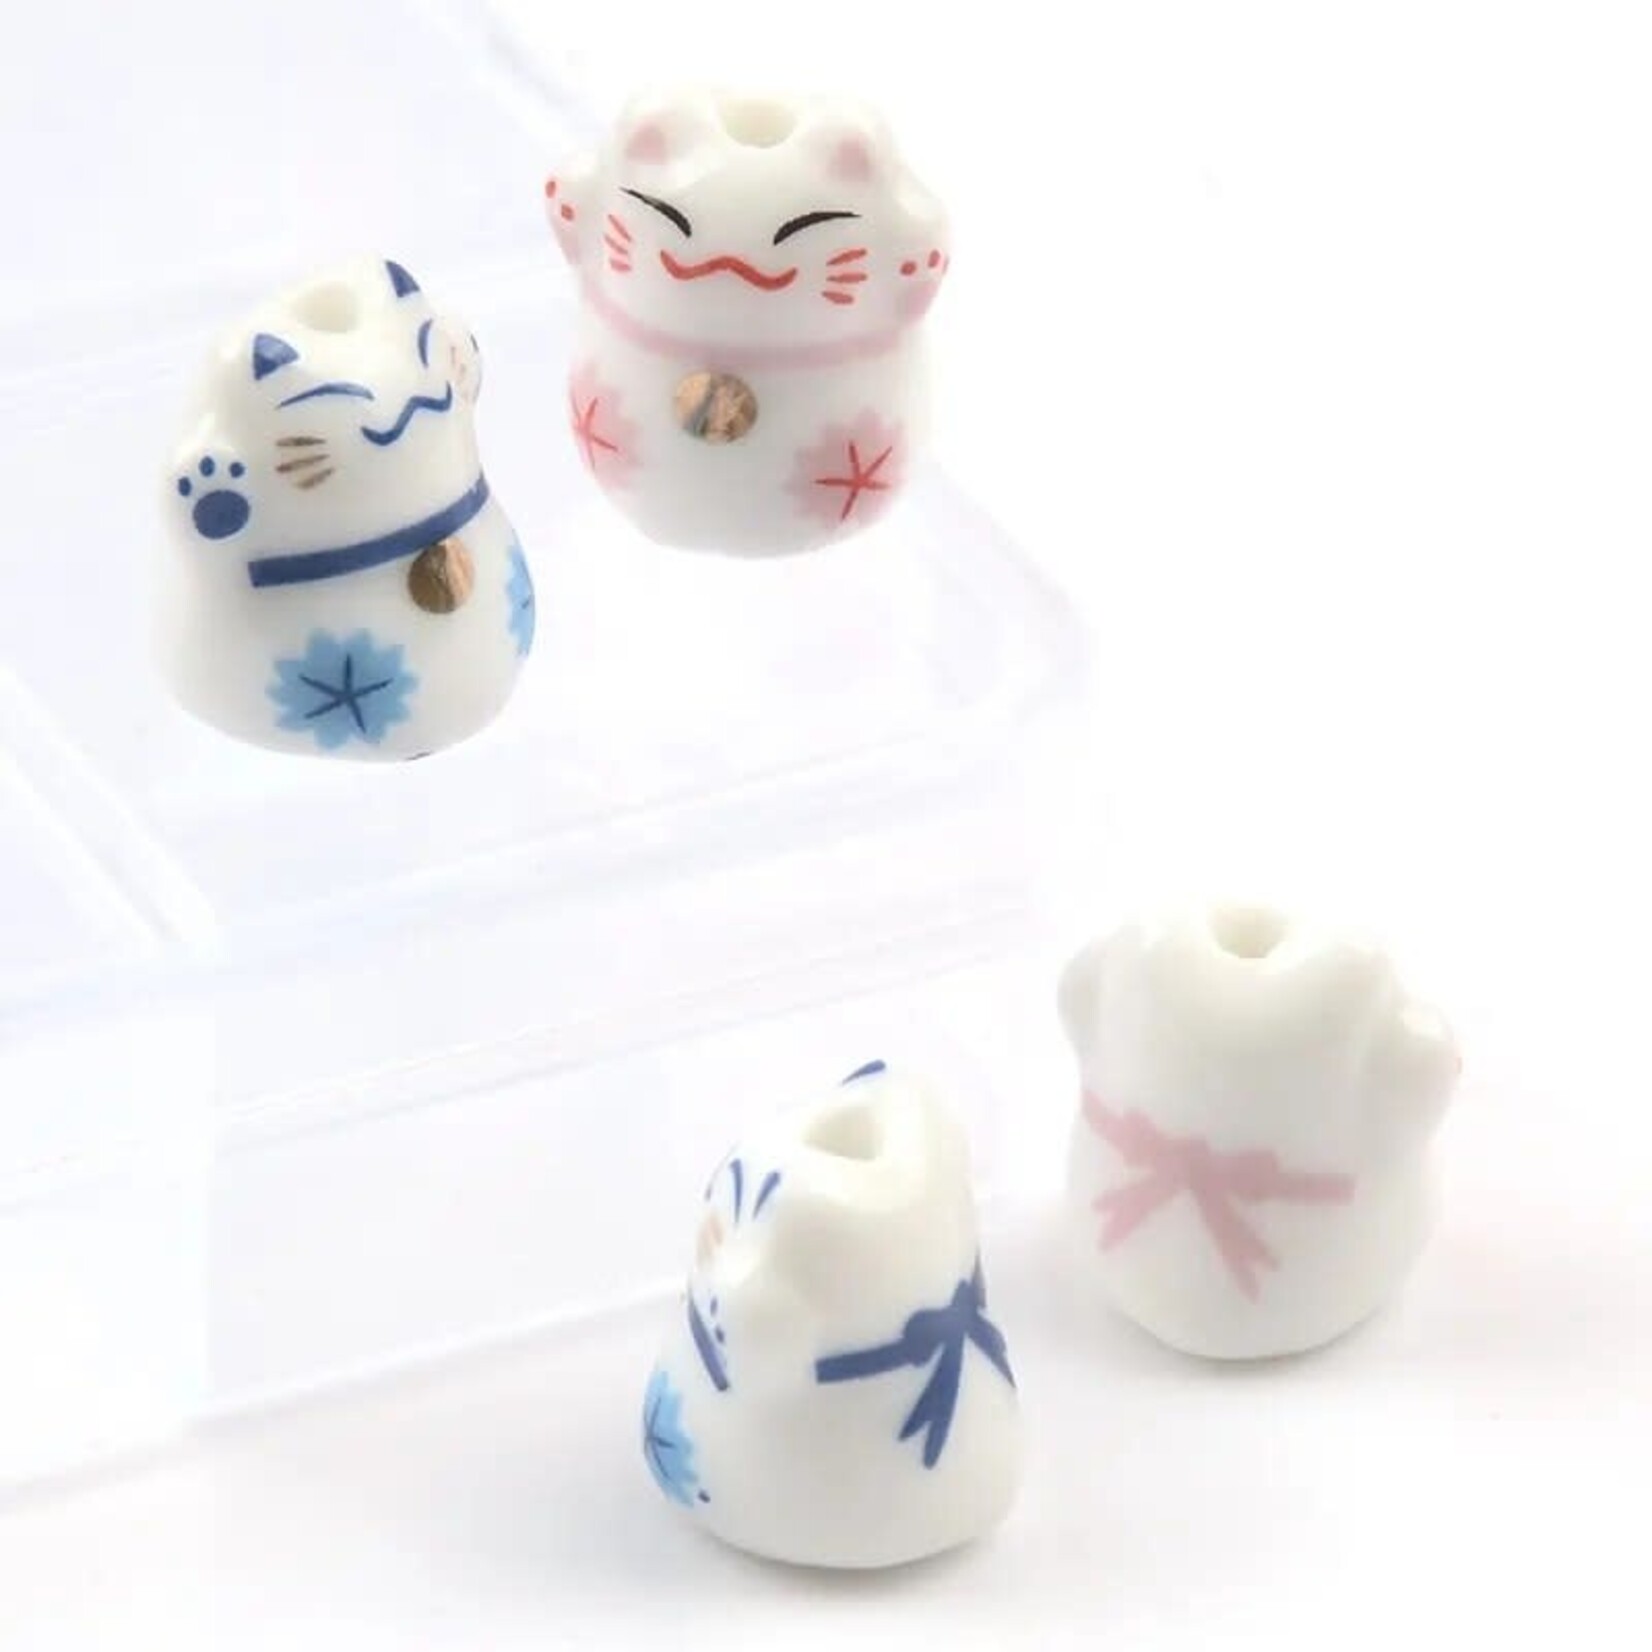 Lucky Cat 13x14mm Blue Porcelain Bead